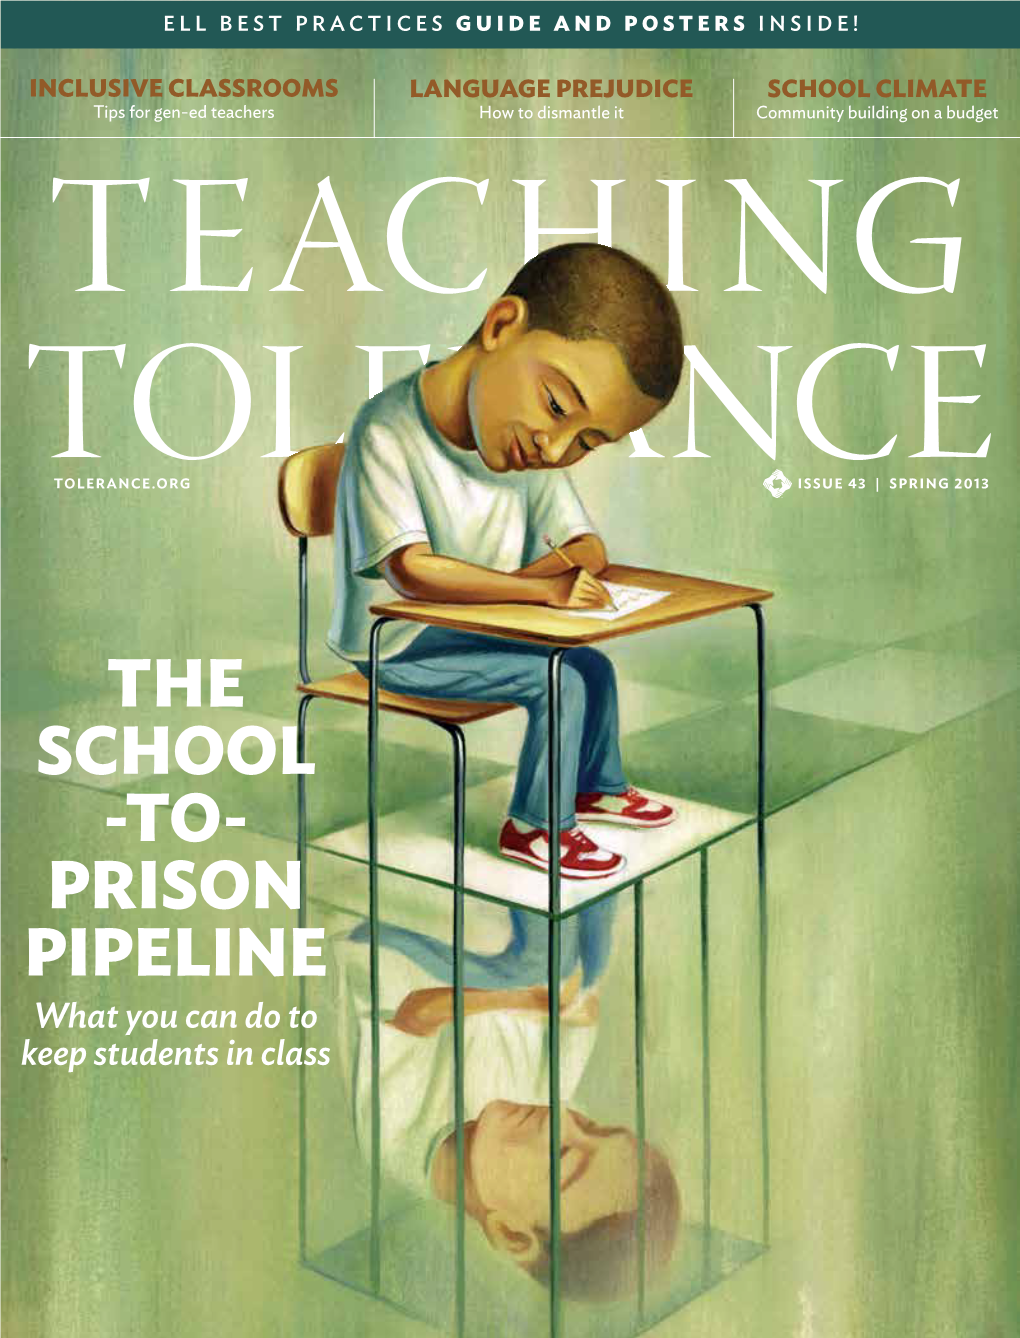 The School -To- Prison Pipeline